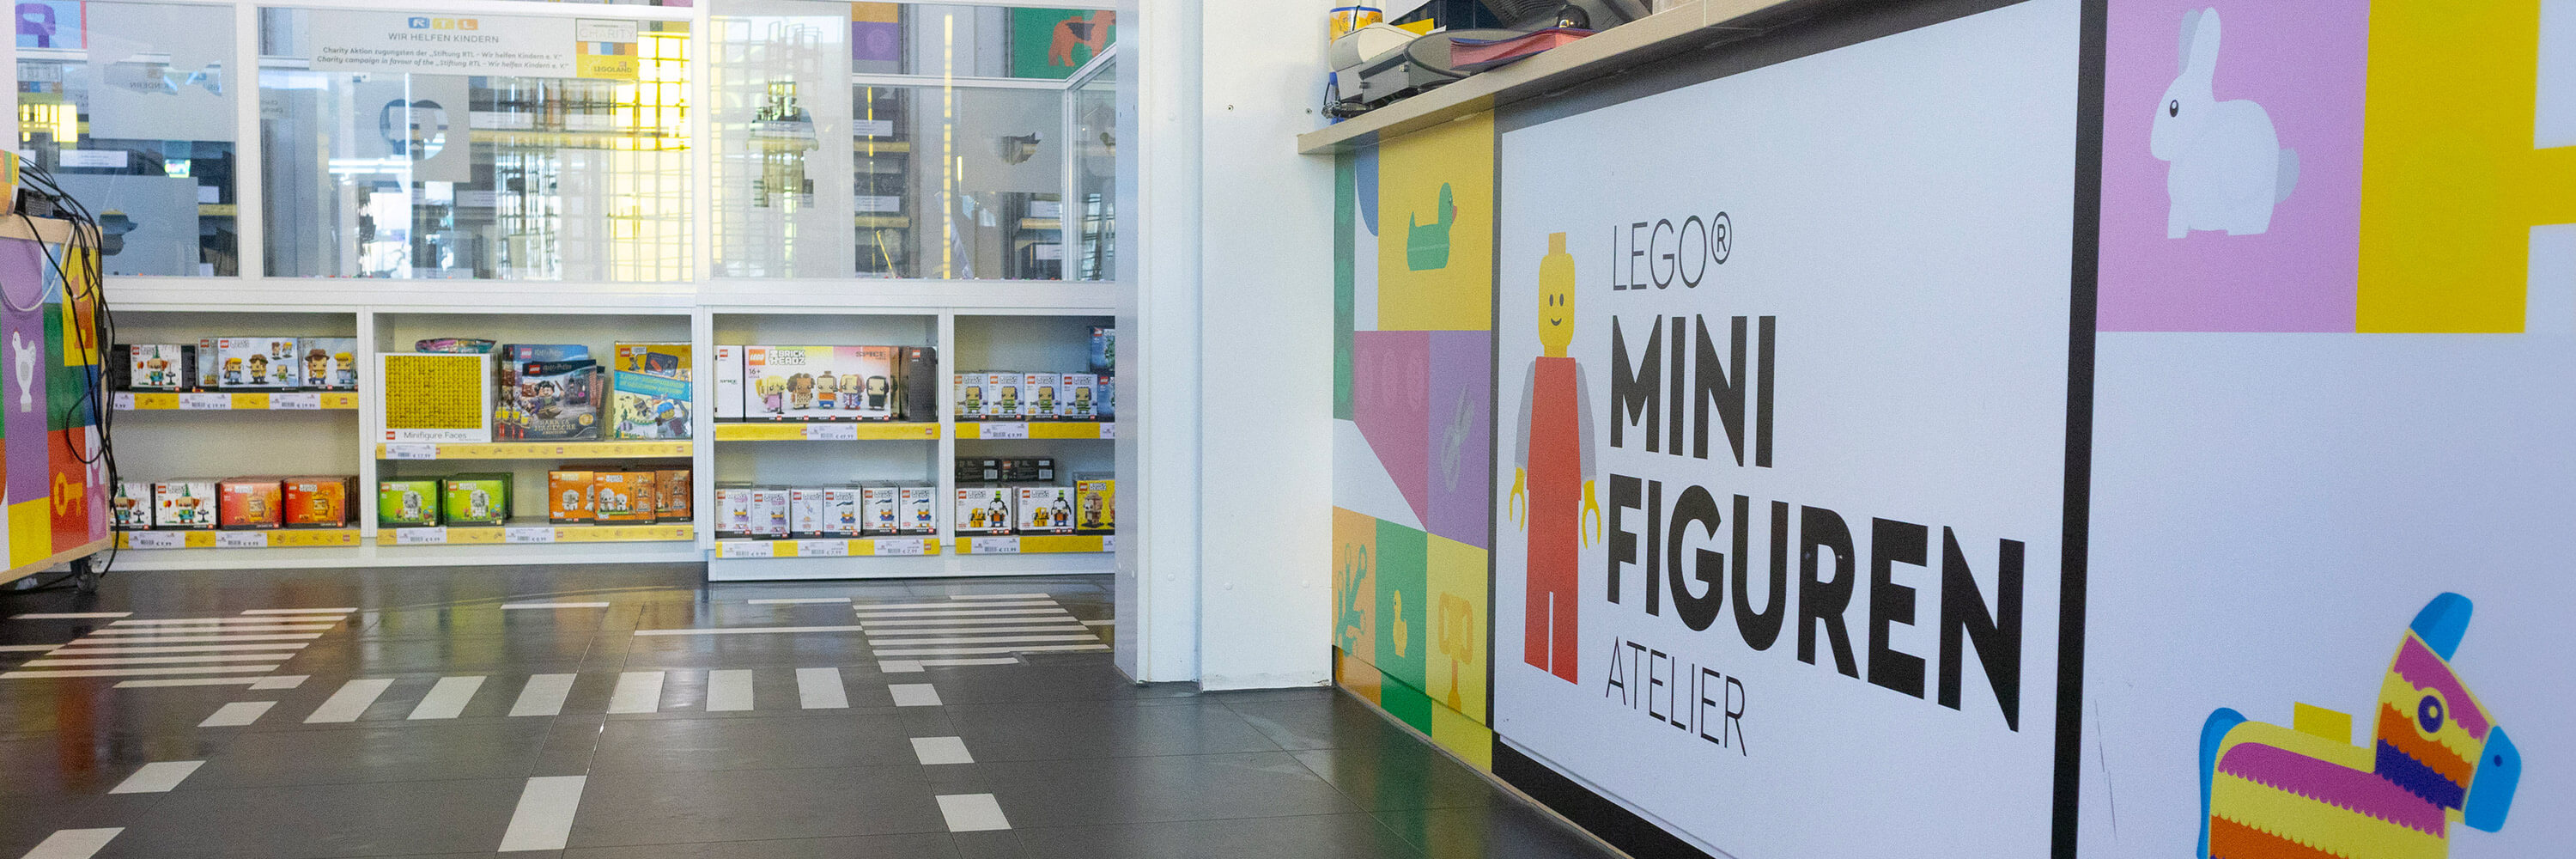 LEGO Minifiguren Atelier